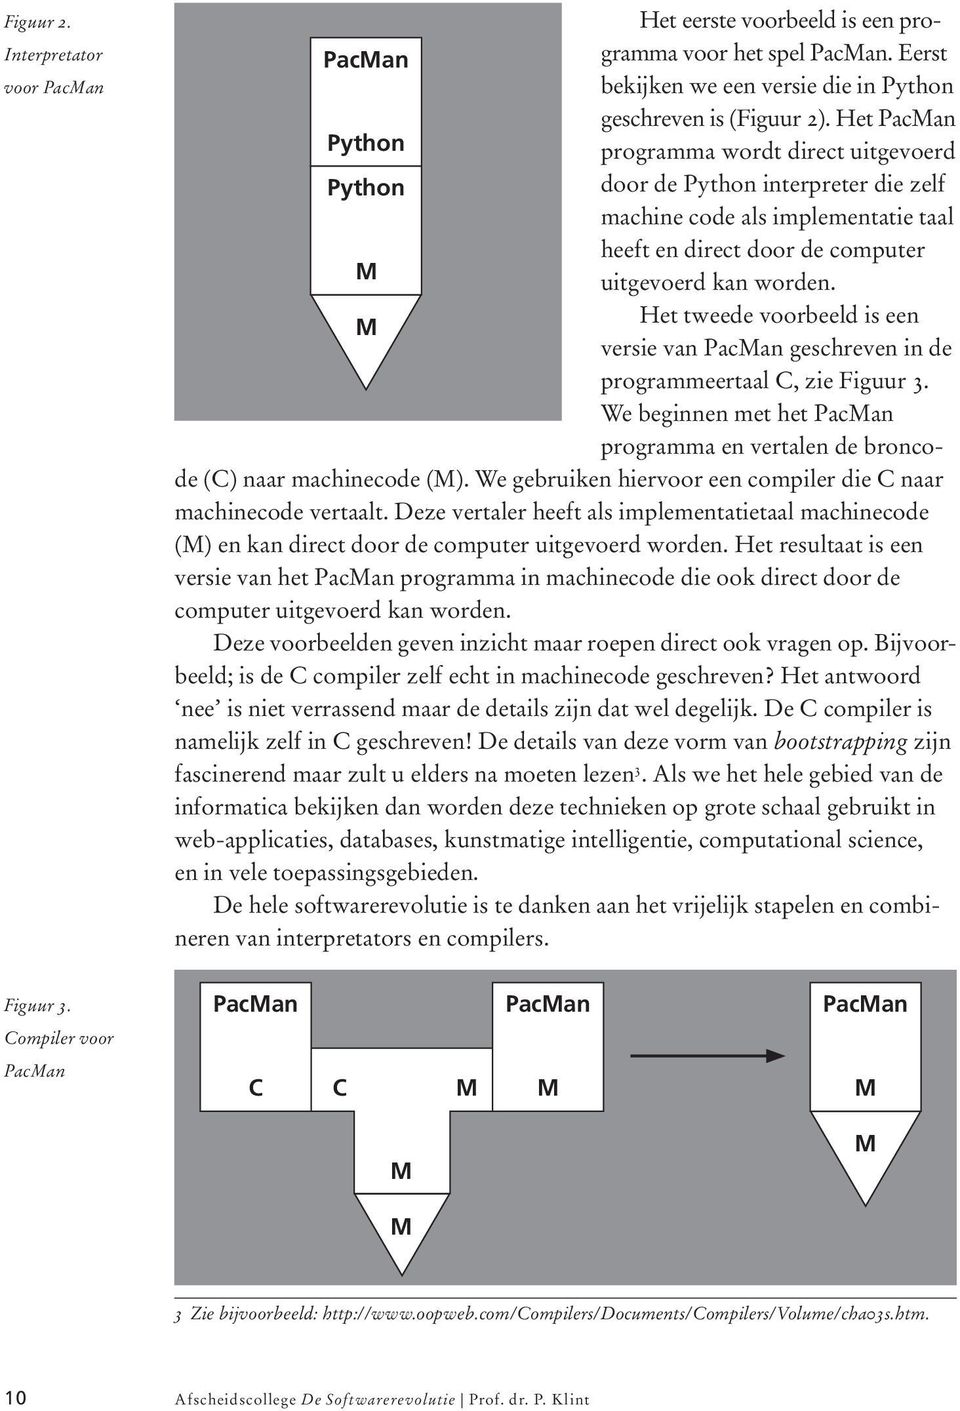 Het tweede voorbeeld is een M versie van PacMan geschreven in de programmeertaal C, zie Figuur 3. We beginnen met het PacMan programma en vertalen de broncode (C) naar machinecode (M).